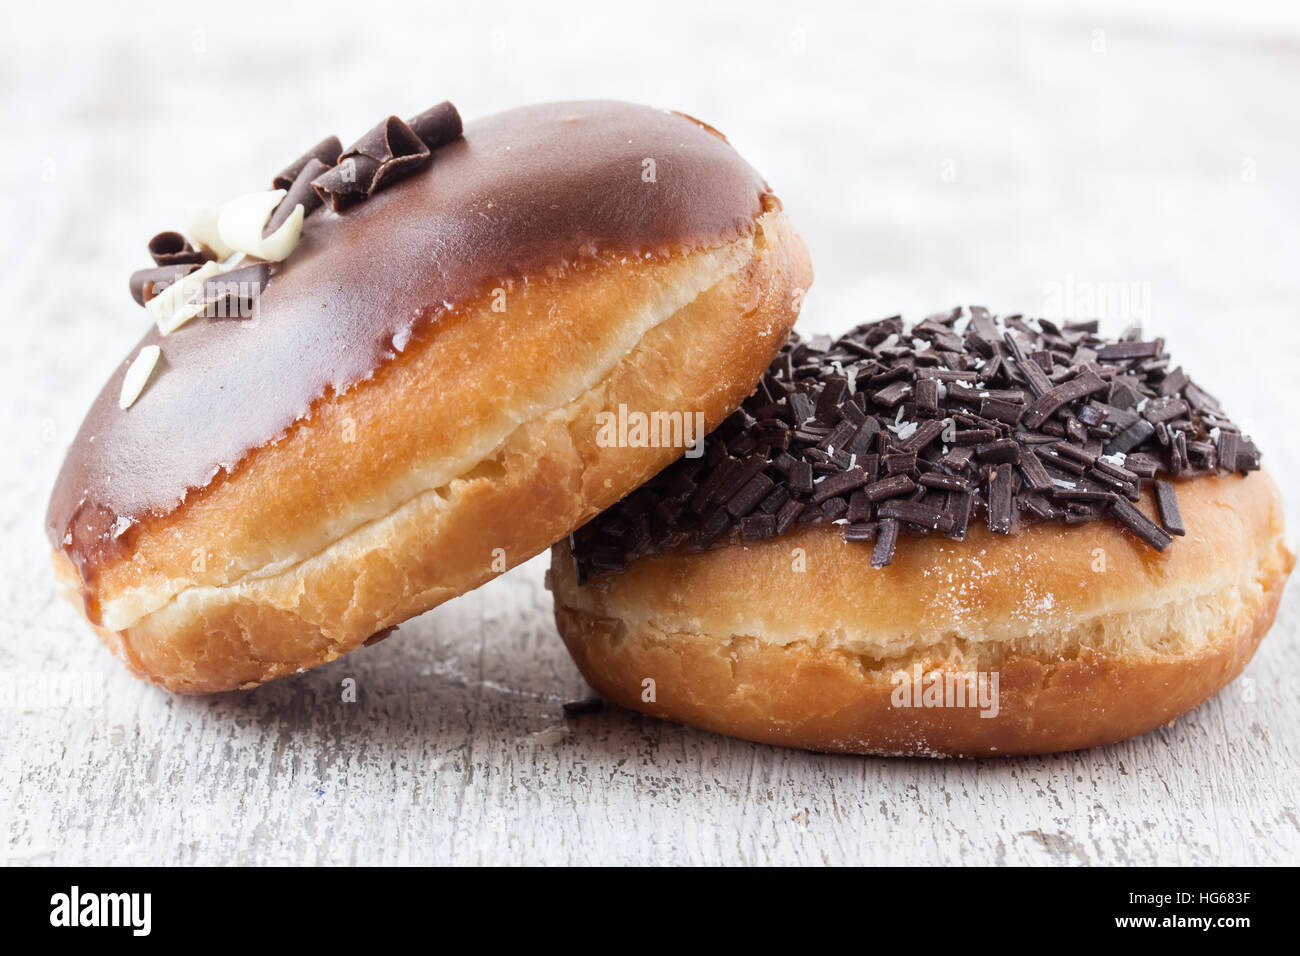 chocolate berliner donuts Stock Photo